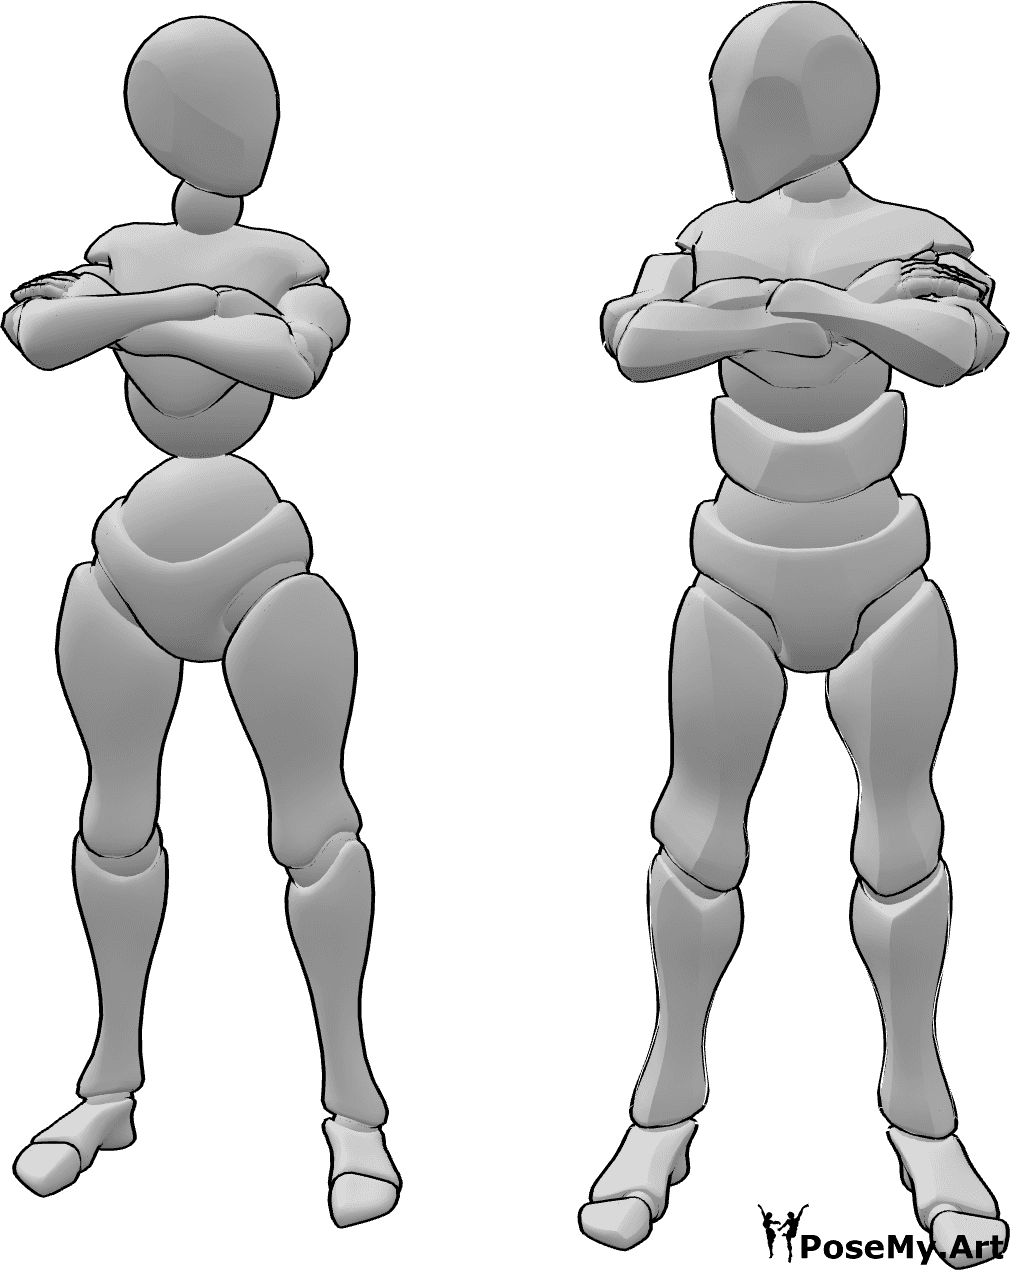 Referencia de poses- Postura de enfado con los brazos cruzados - Mujer y hombre enfadados con los brazos cruzados posan